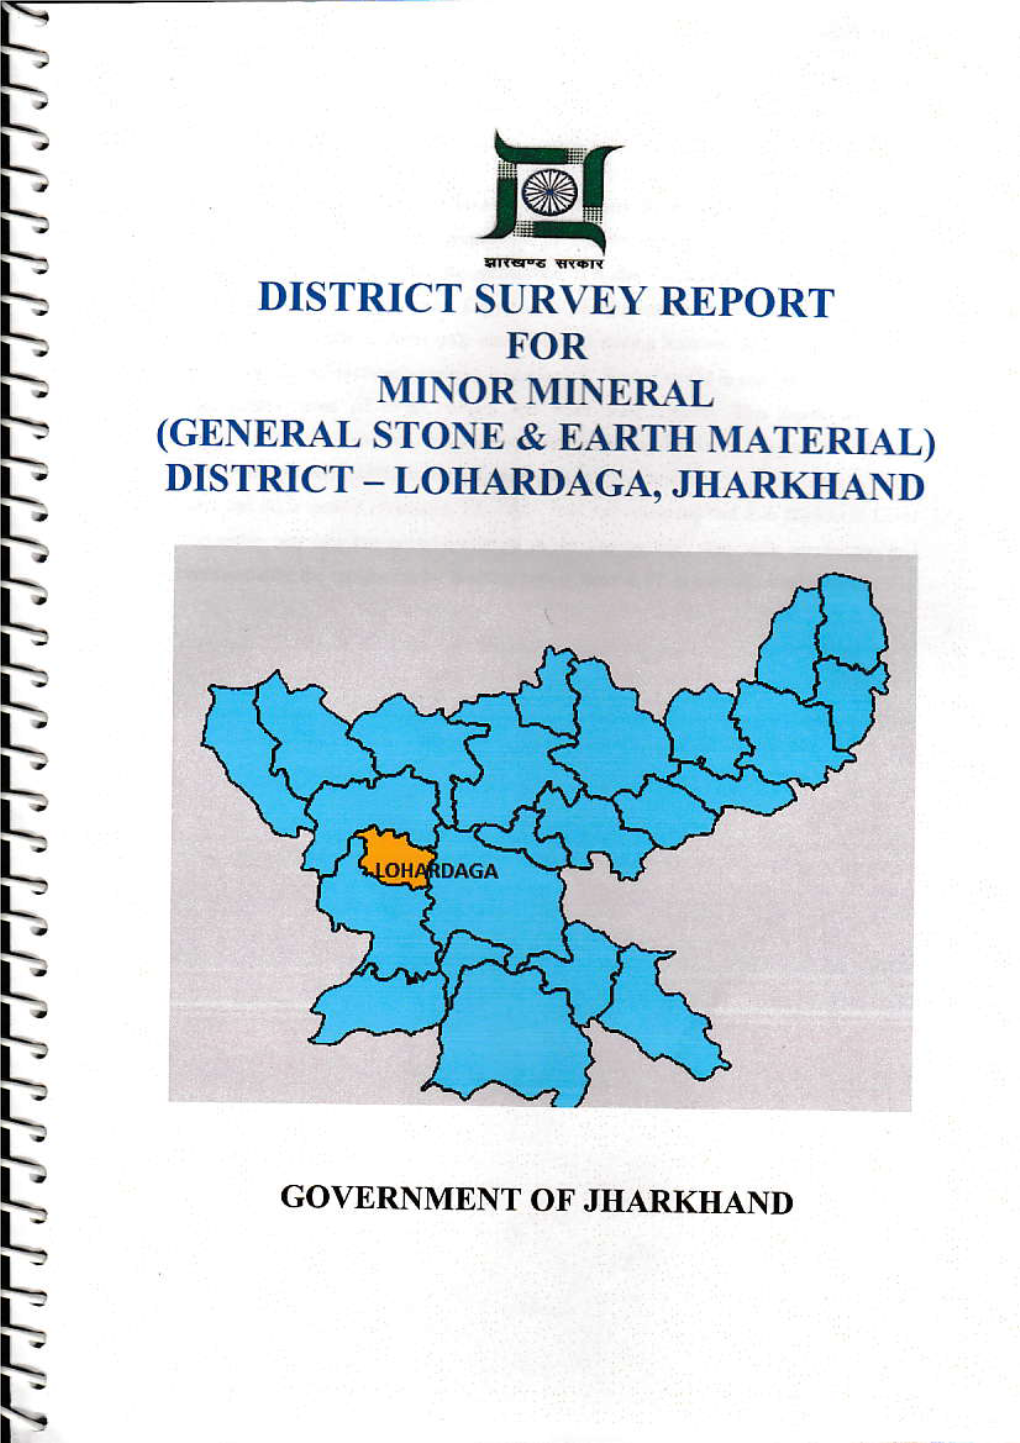 DISTRICT SURVEY REPORT Tj for L- MINORMINERAI F (GENERAL STONE & EARTH MATERIAL) L- DISTRICT - LOIIARDAGA